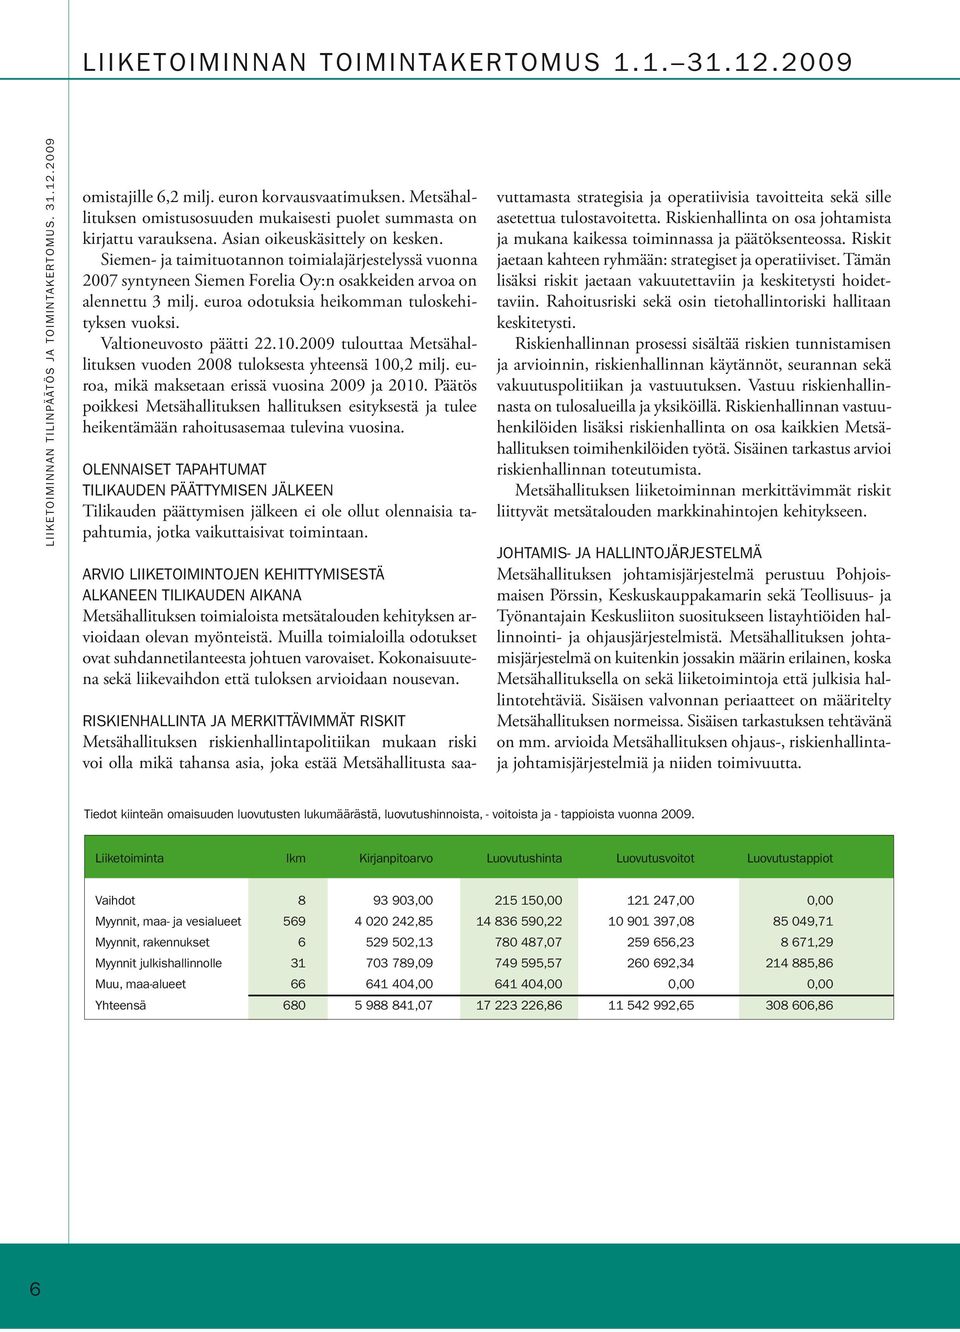 Siemen- ja taimituotannon toimialajärjestelyssä vuonna 2007 syntyneen Siemen Forelia Oy:n osakkeiden arvoa on alennettu 3 milj. euroa odotuksia heikomman tuloskehityksen vuoksi.